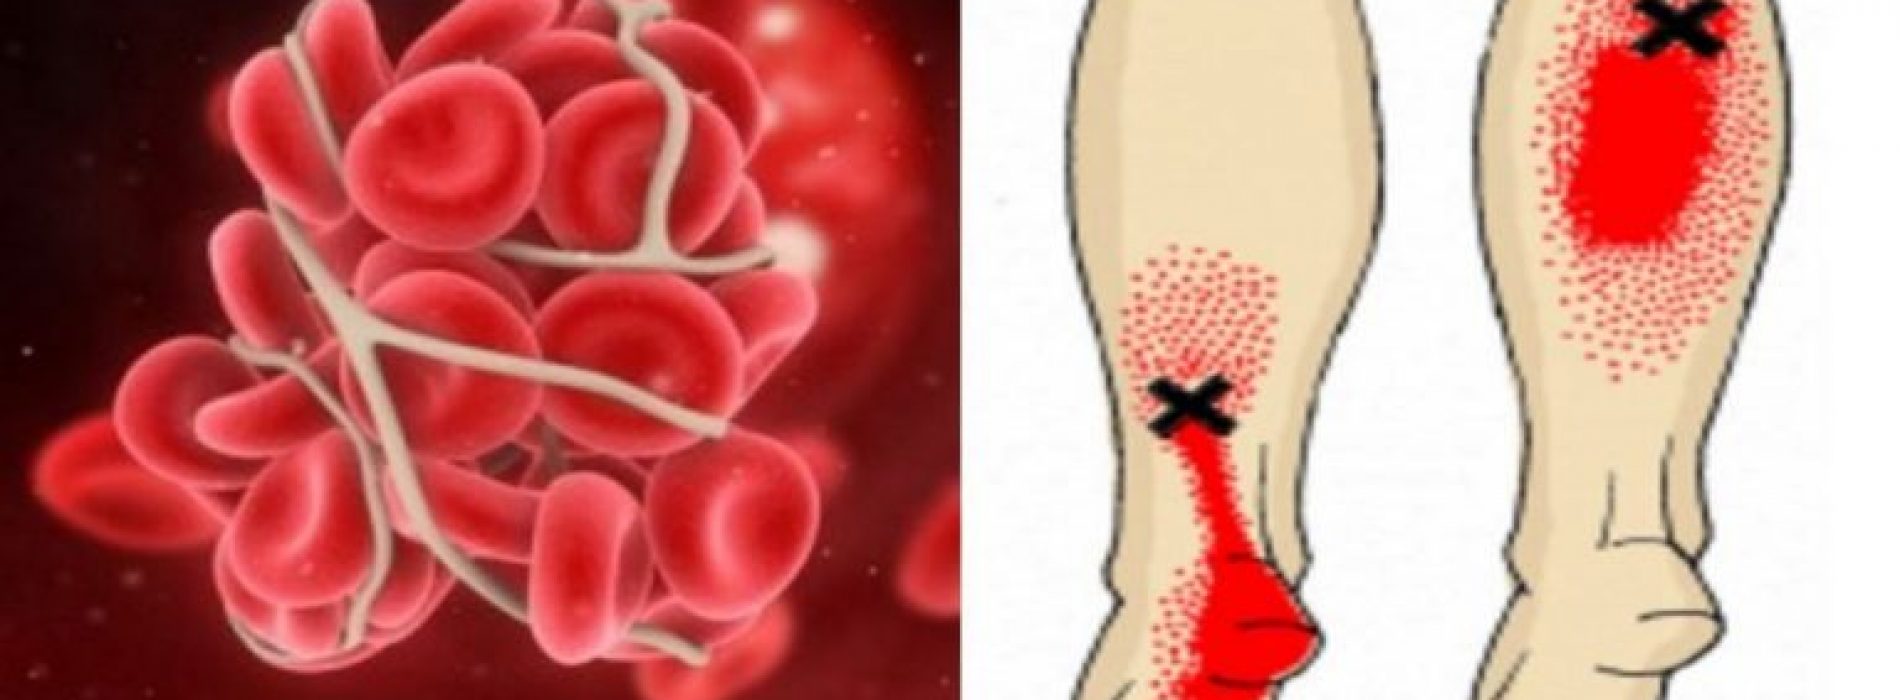 8 makkelijk-te-missen tekenen die je kunnen waarschuwen voor een bloedprop/trombose